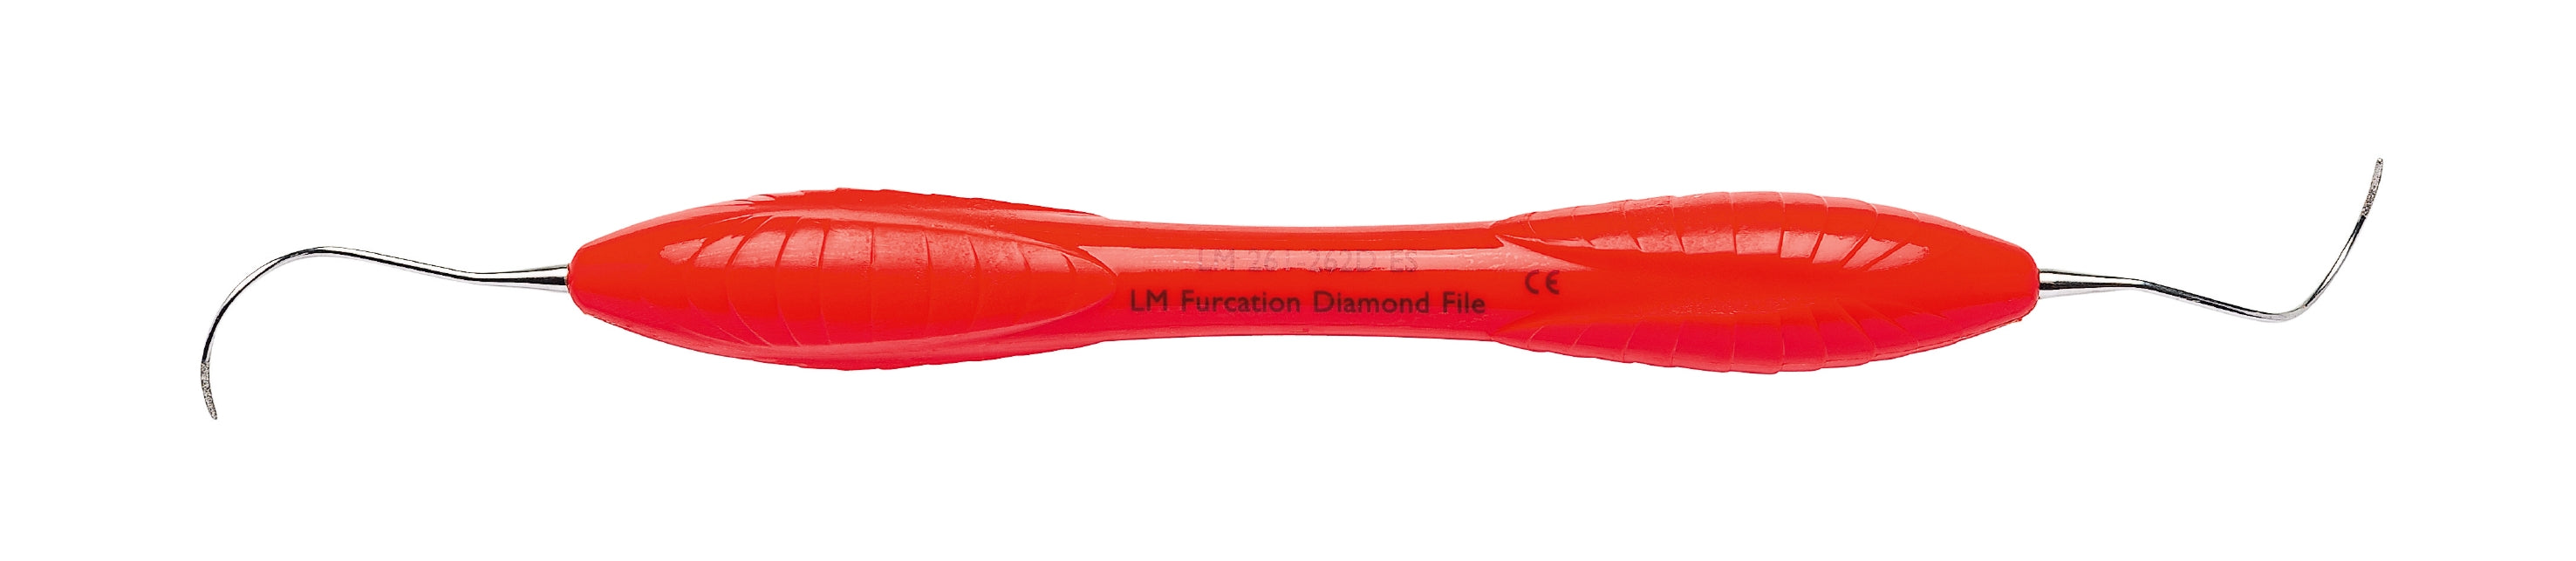 LM 261-262DES Furcation Diamond File ES